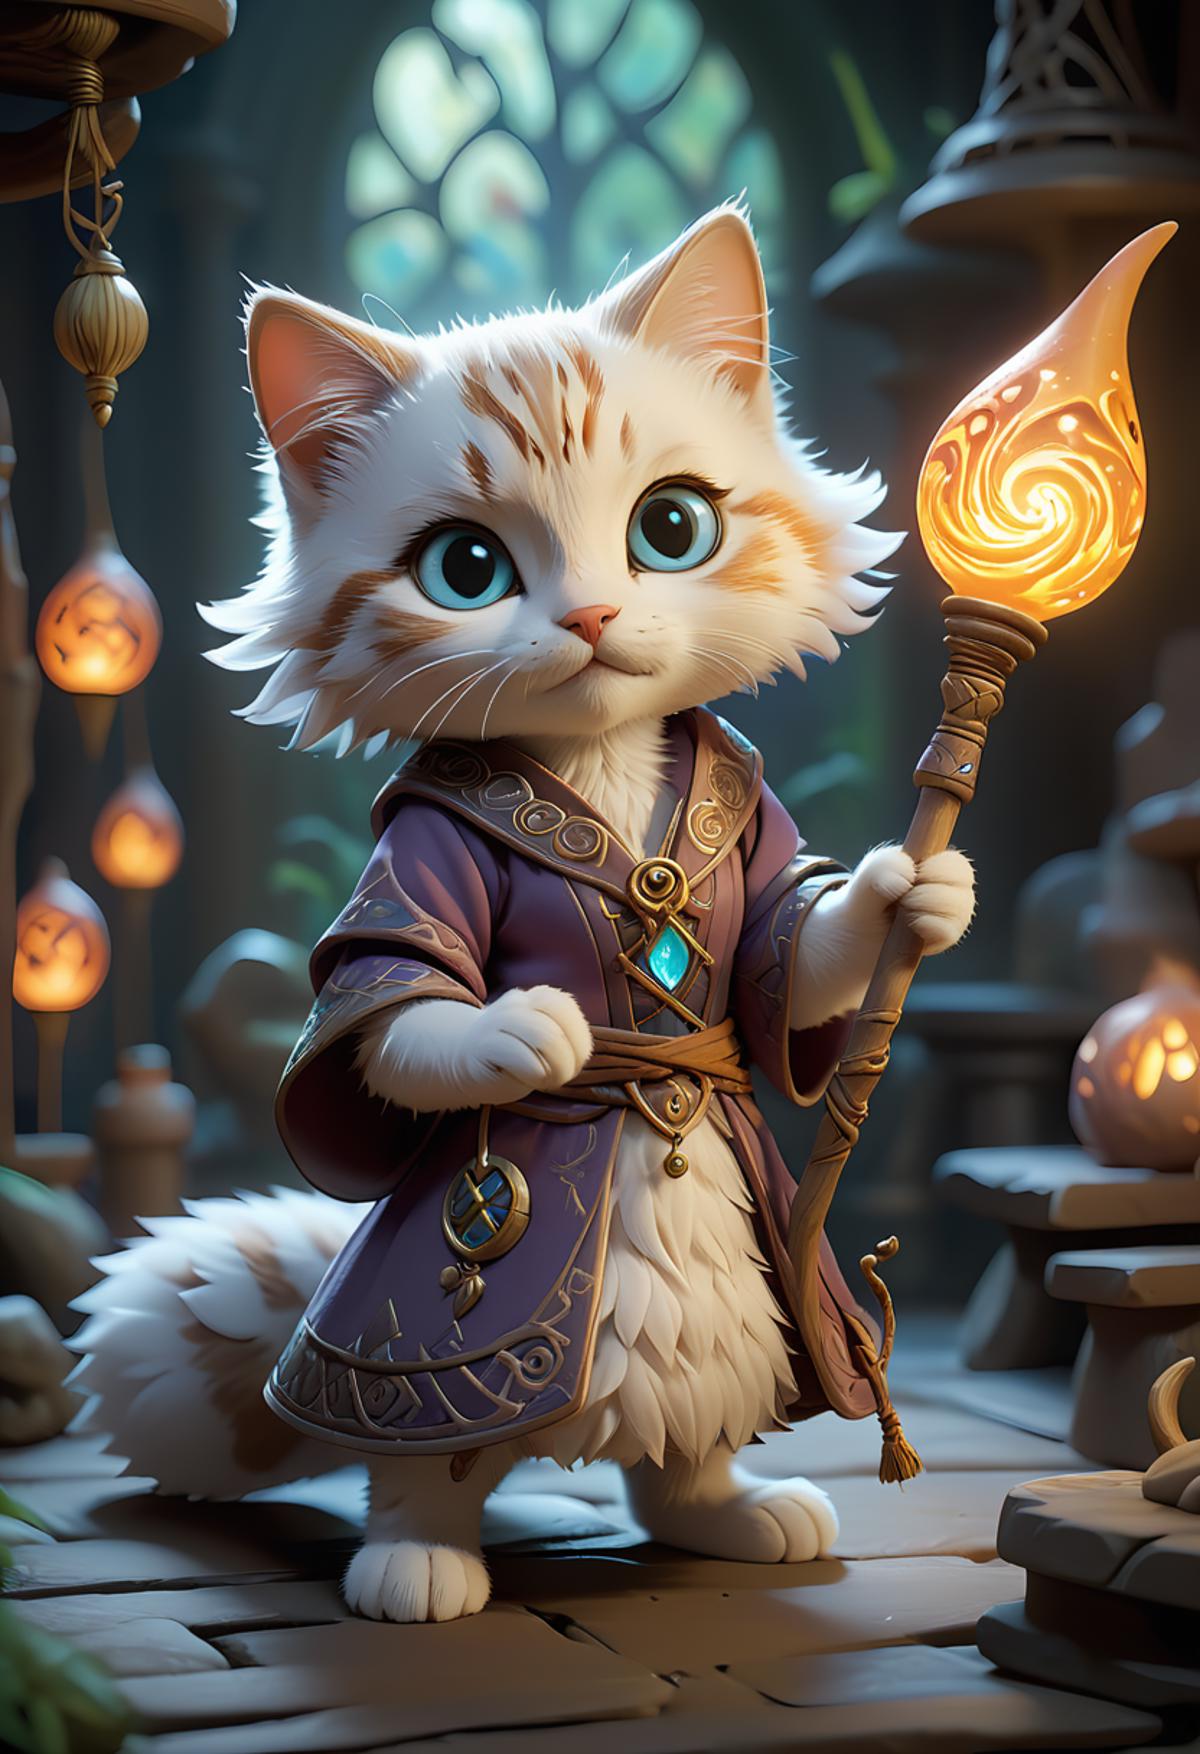 A cartoon cat holding a wand.